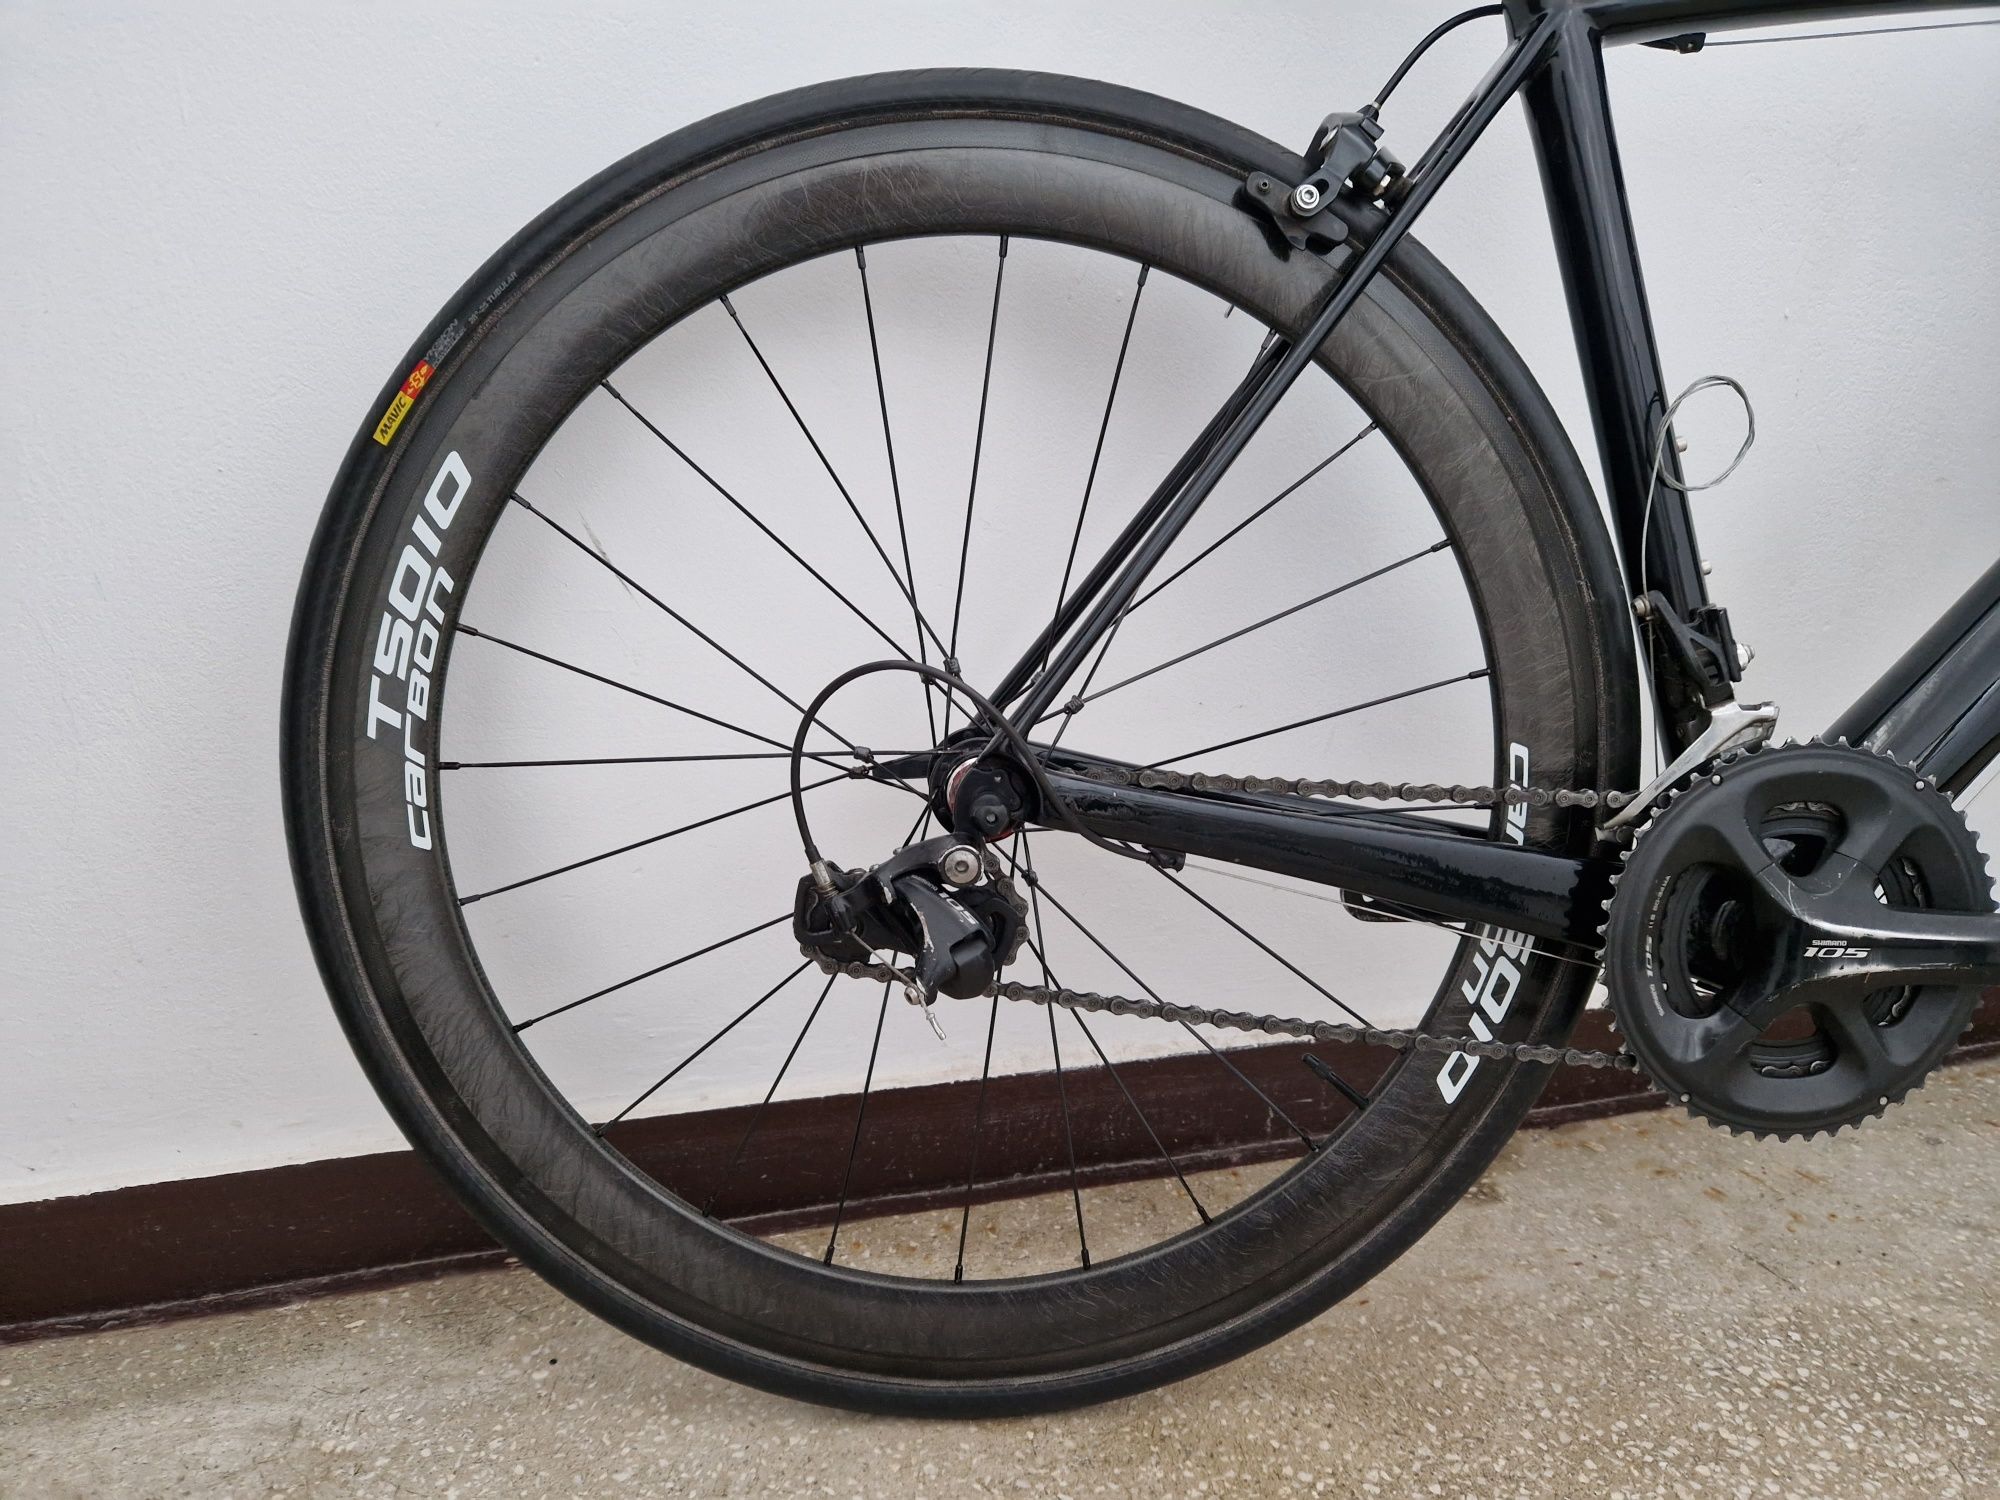 Bicicletă cursieră full carbon Fuji Altamira mărimea 54